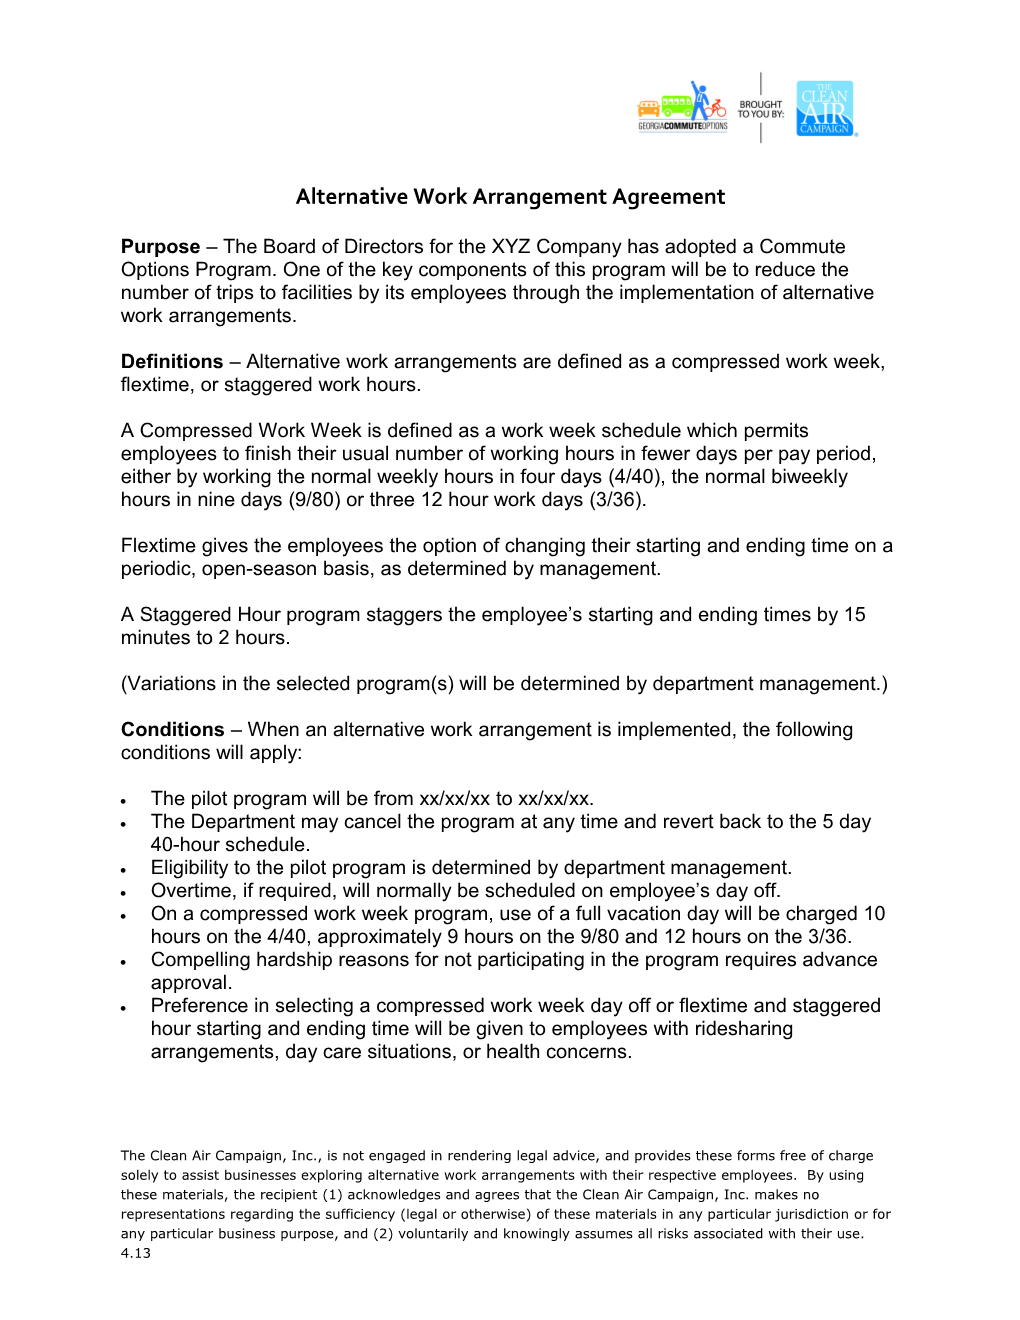 Alternative Work Schedule Agreement